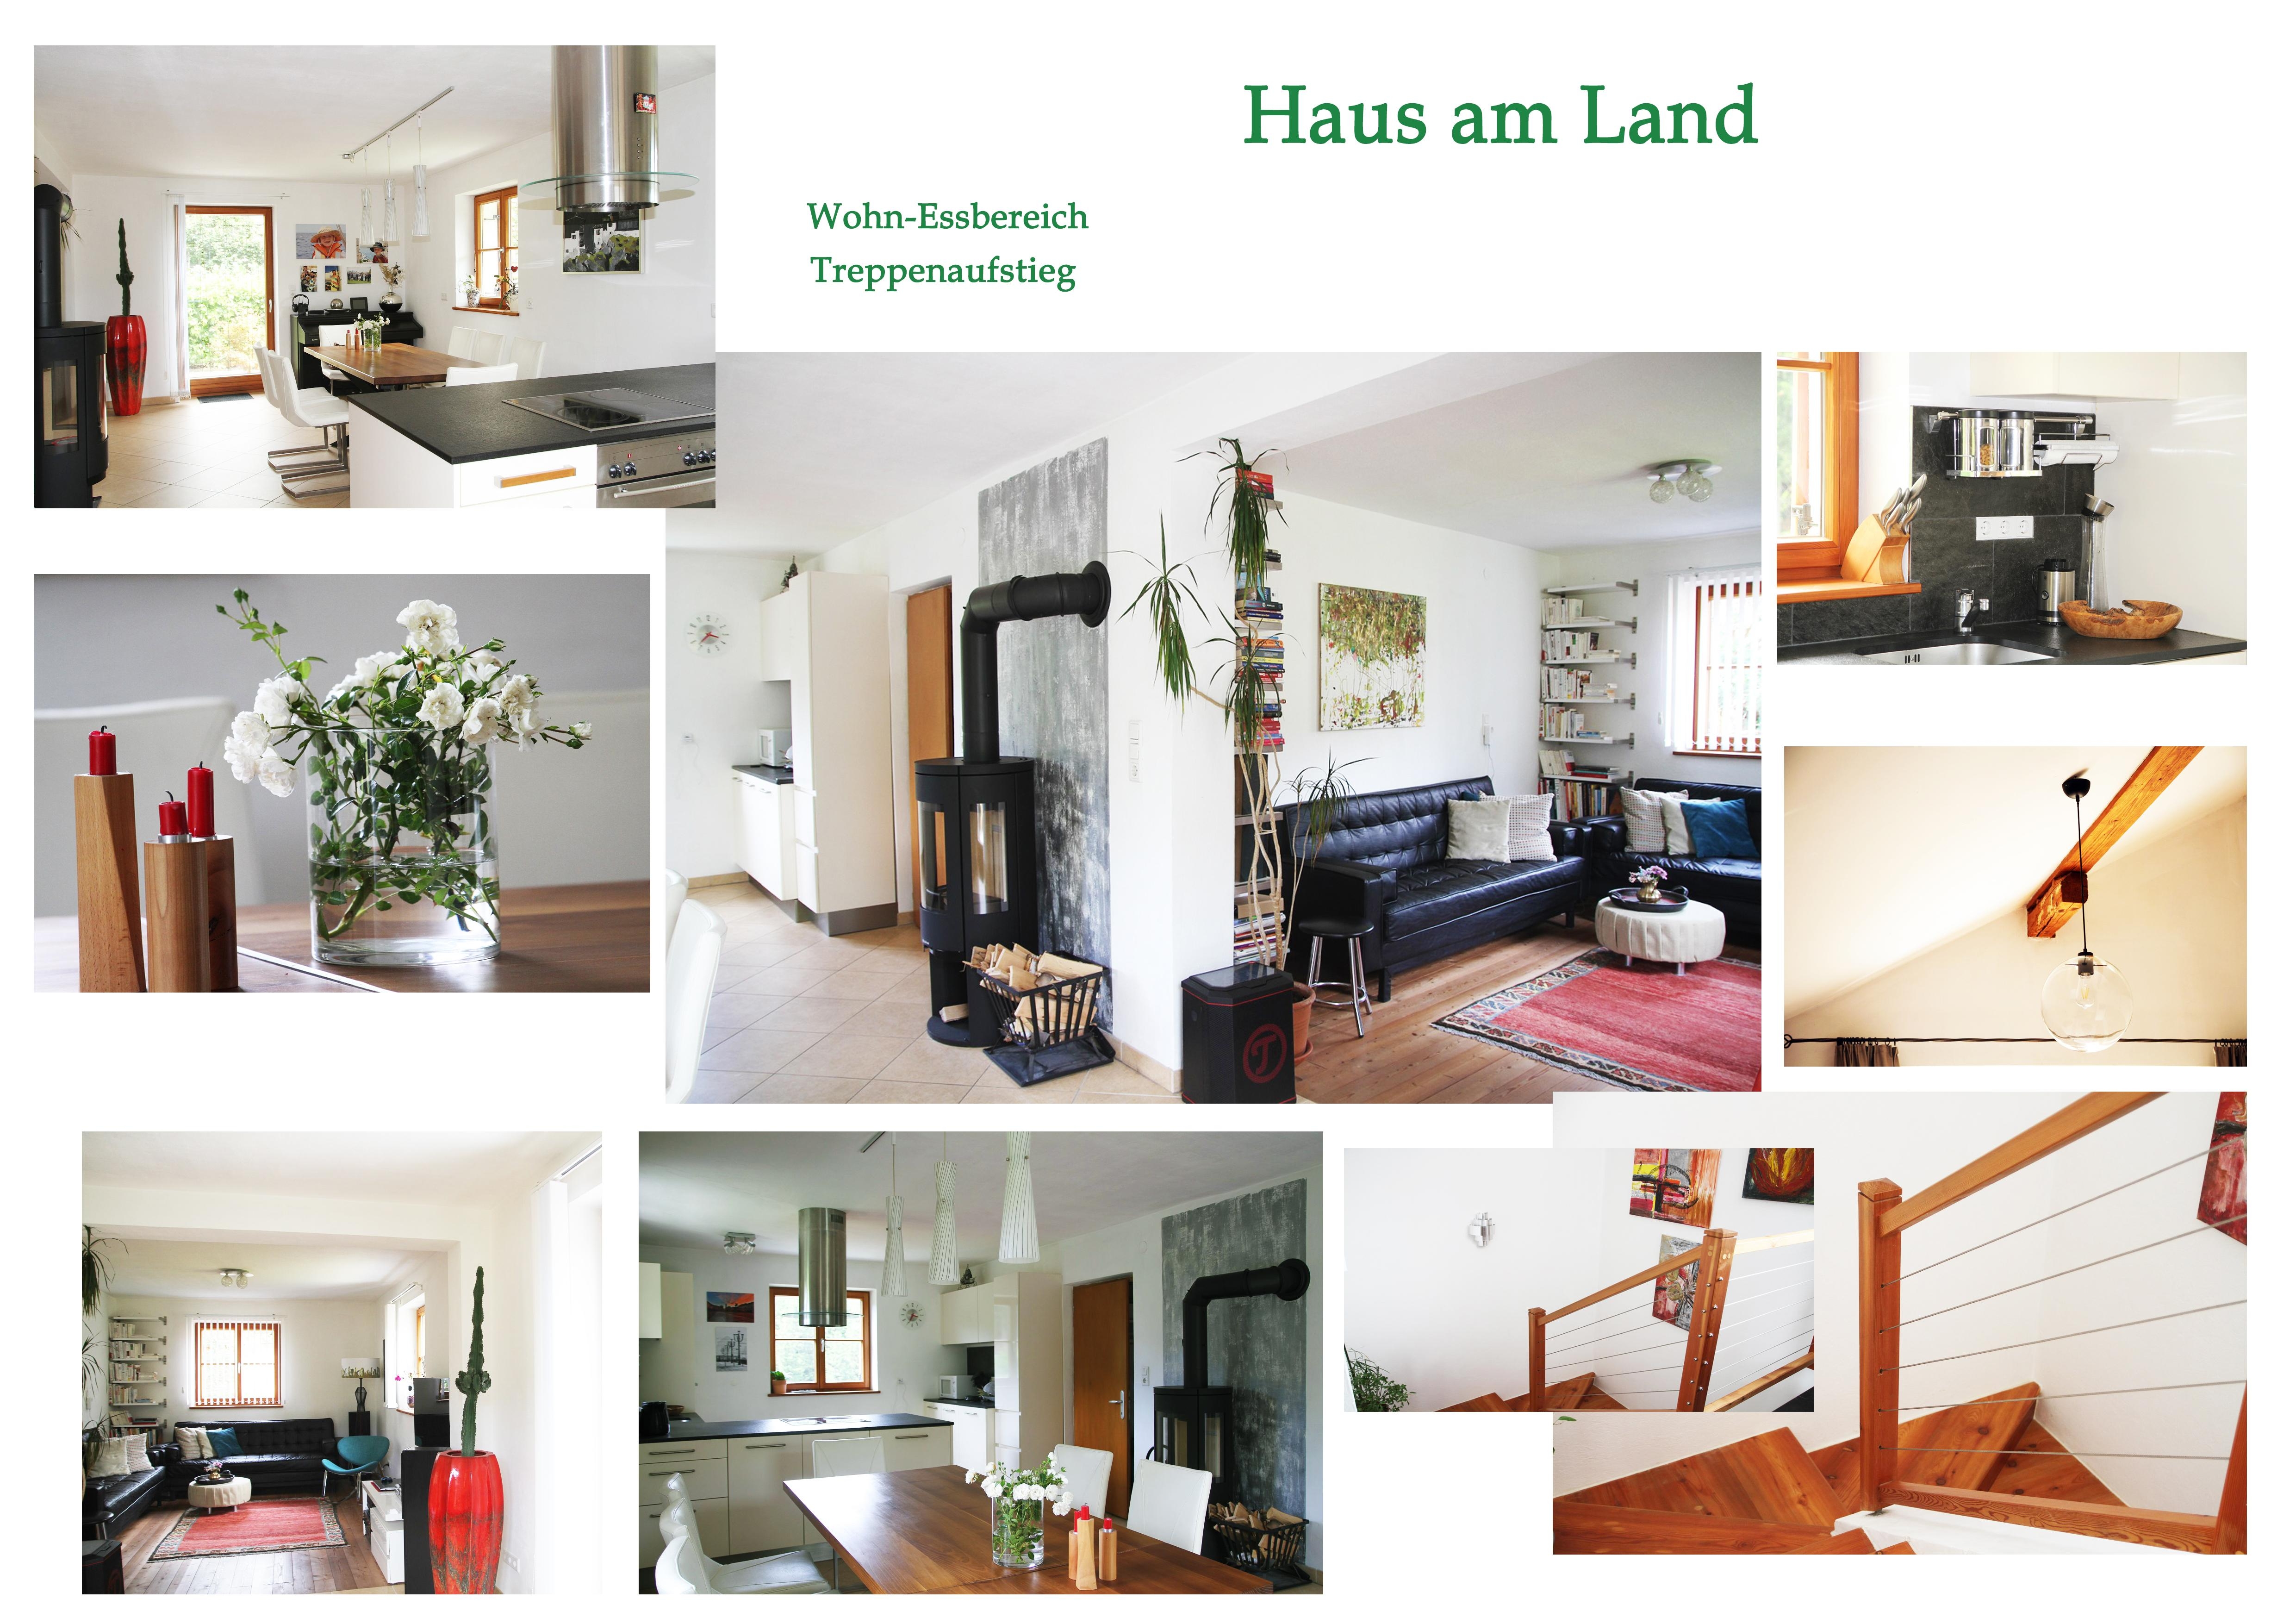 #zuhausesein#wohnzimmer#essbereich#teppich#sofa#modern#lieblingsplatz#collage#hausamland#